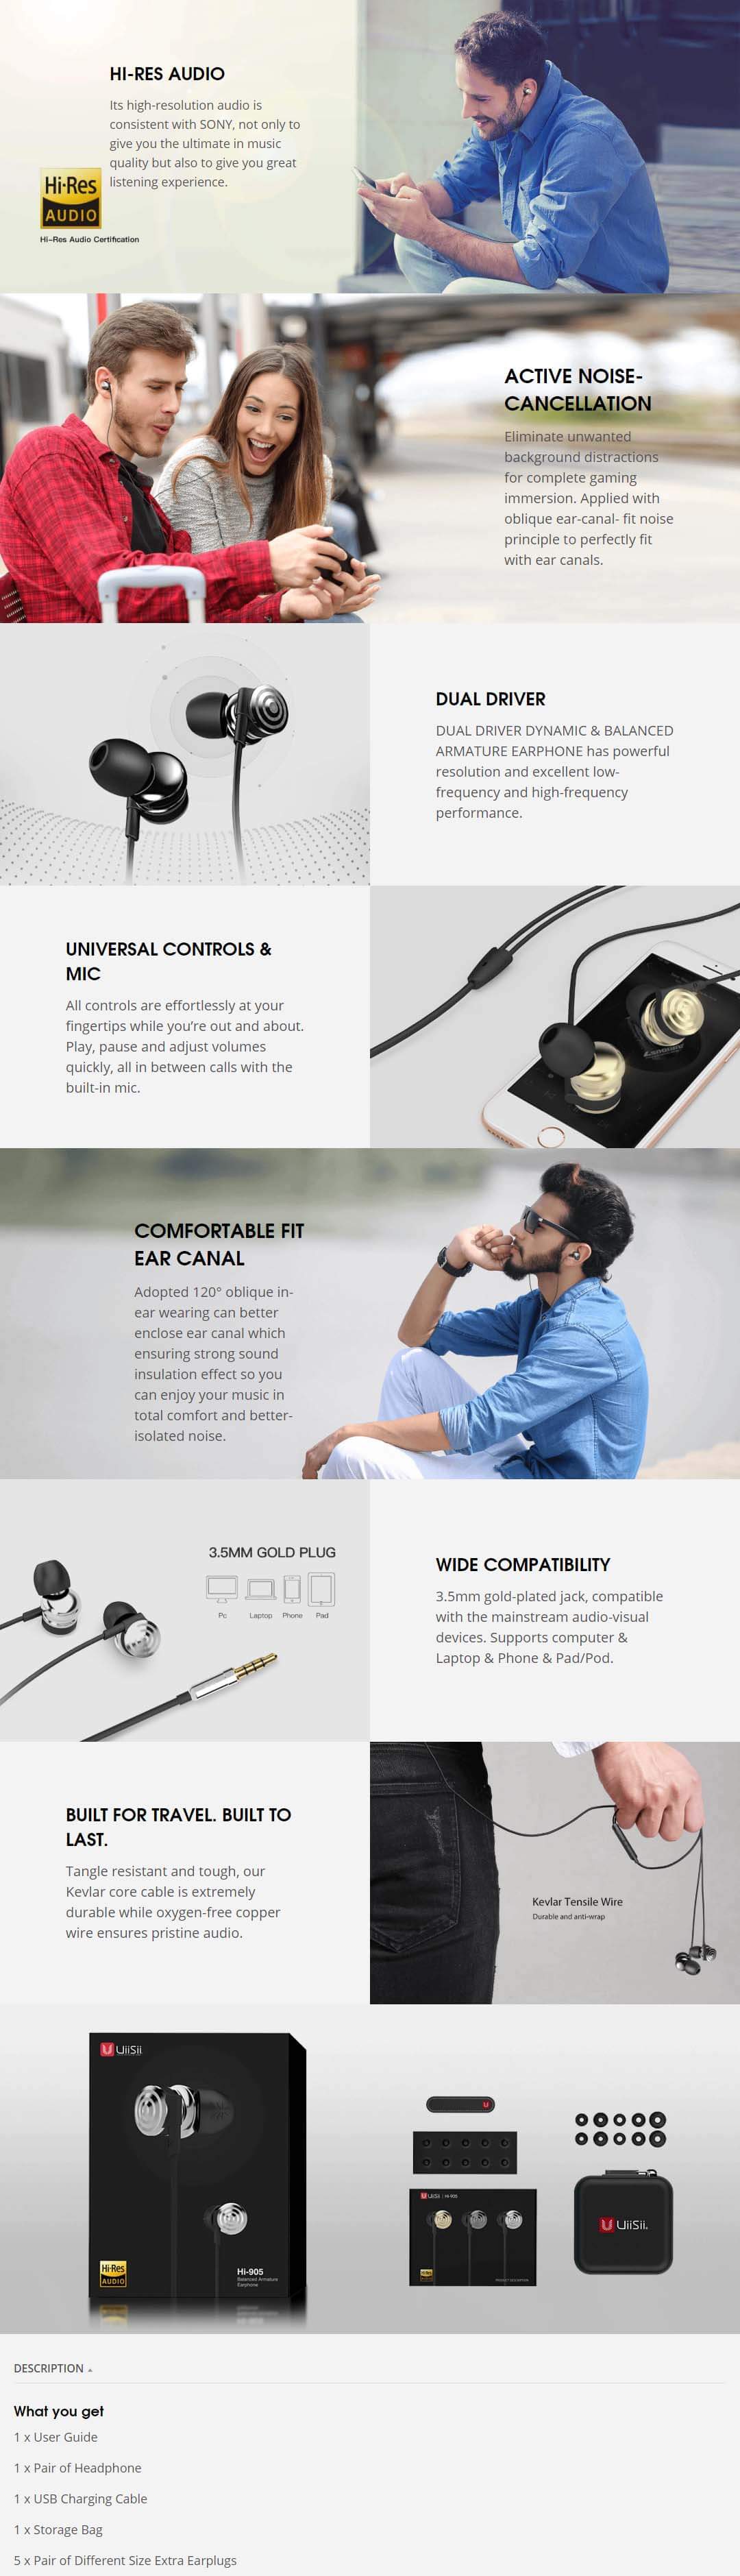 UiiSii Hi-905 Wired In-ear Earphone with Metal Dual Drivers &Hi-Res SOP